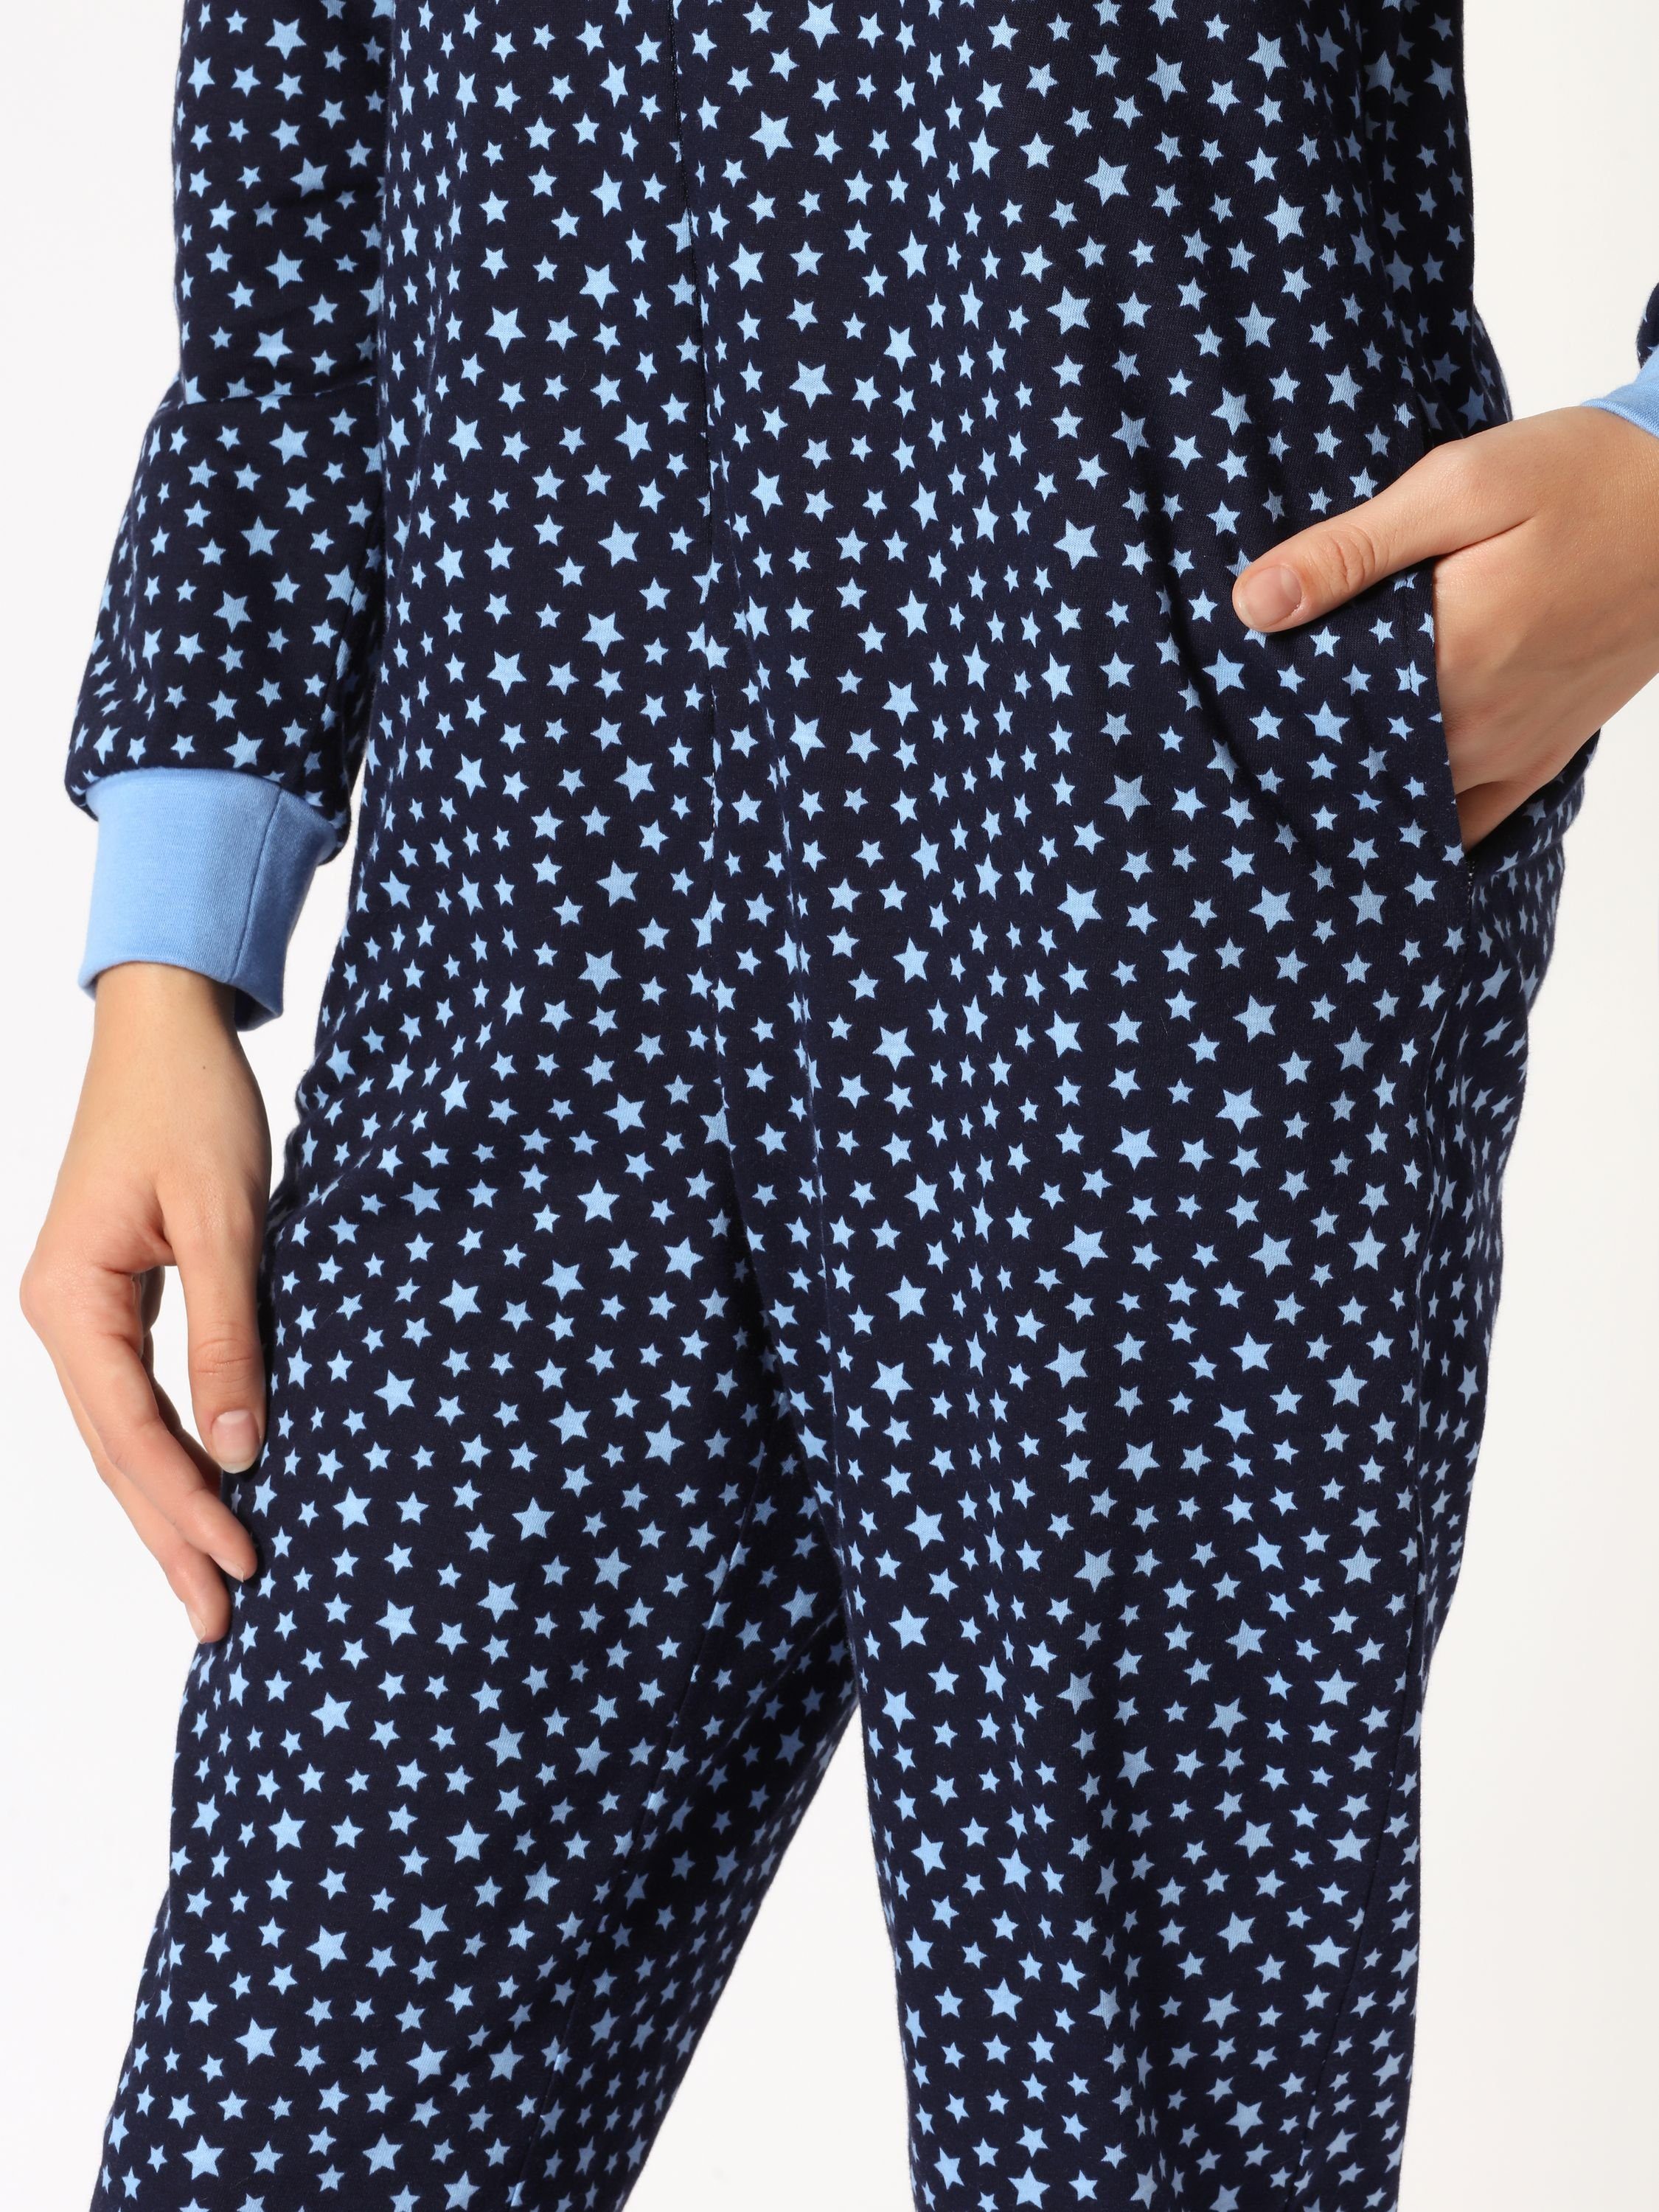 Merry Style Schlafanzug Jugend Mädchen Schlafanzug MS10-235 Blau/Sterne Schlafoverall